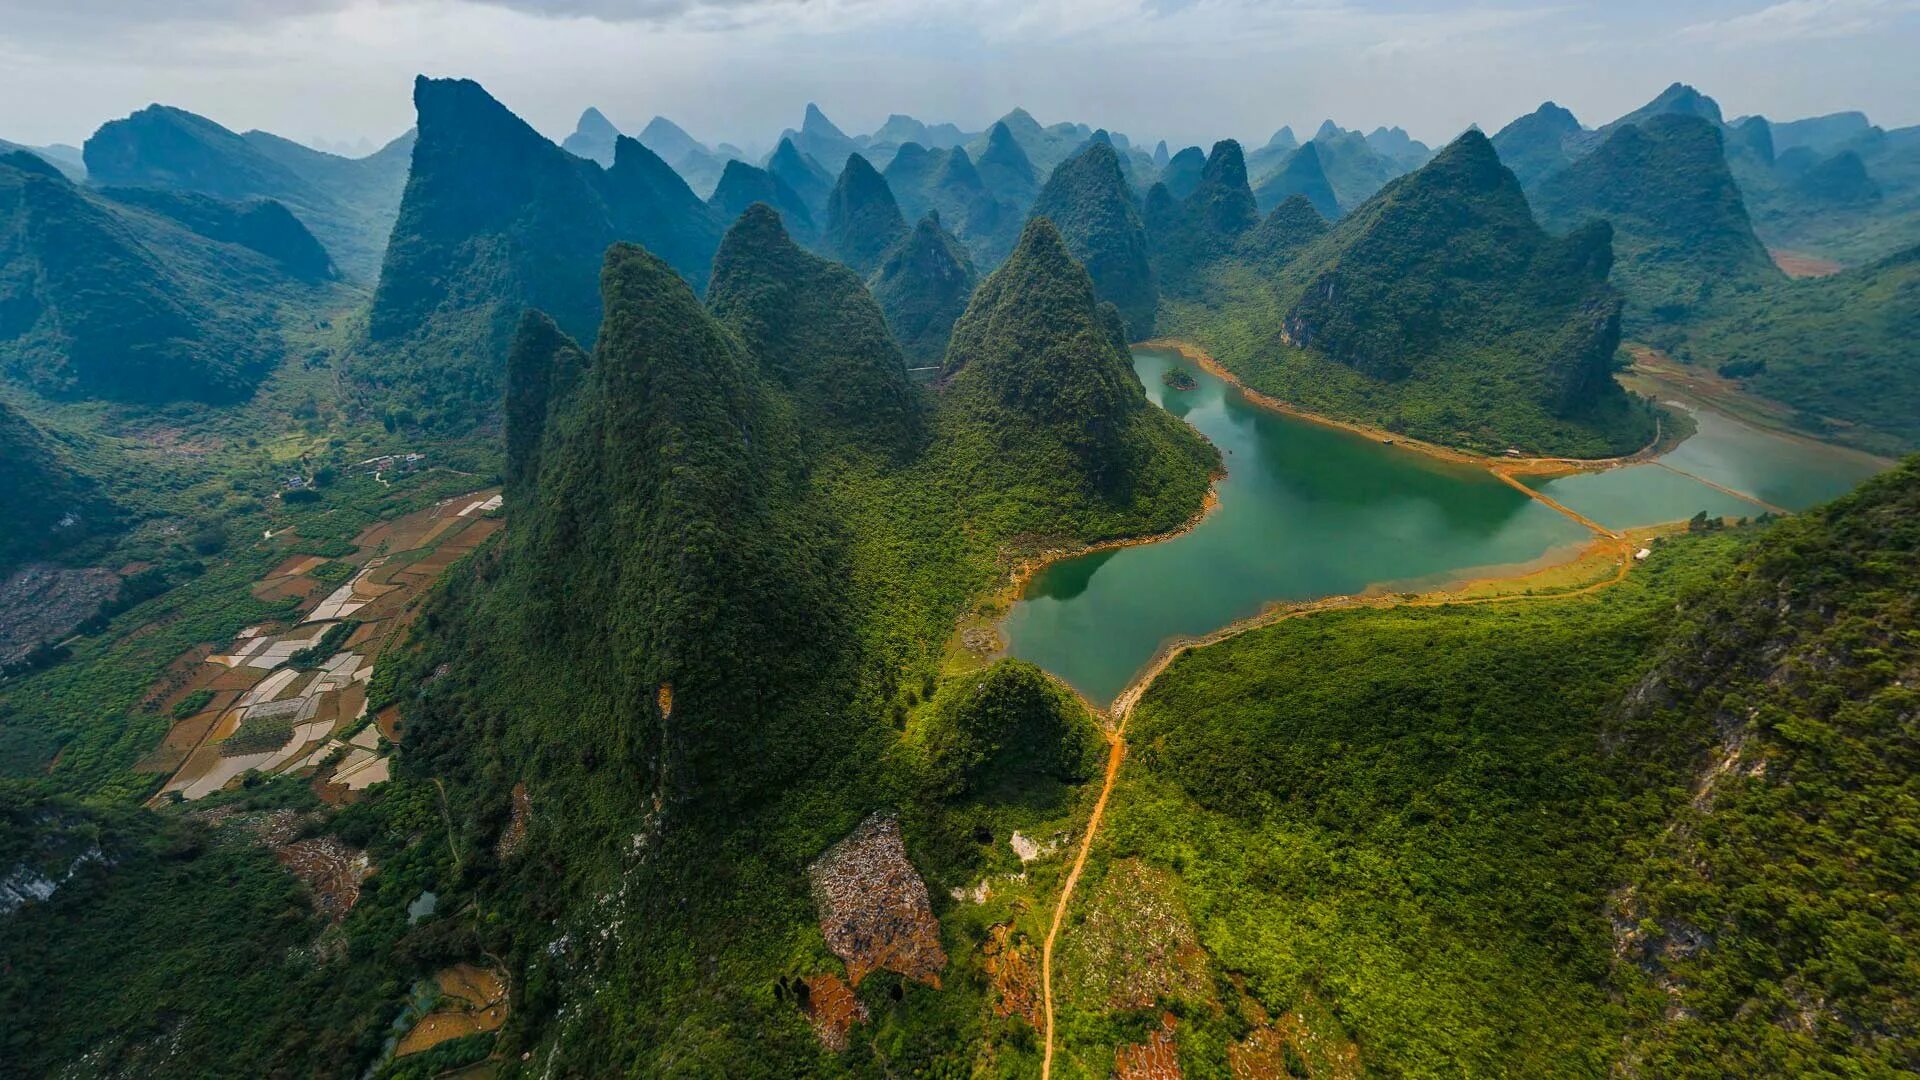 Гуйлинь национальный парк. Гуйлинь Лицзян реки. Национальный парк Гуйлинь и Лицзян, Китай. Горы Хуаншань, Китай.